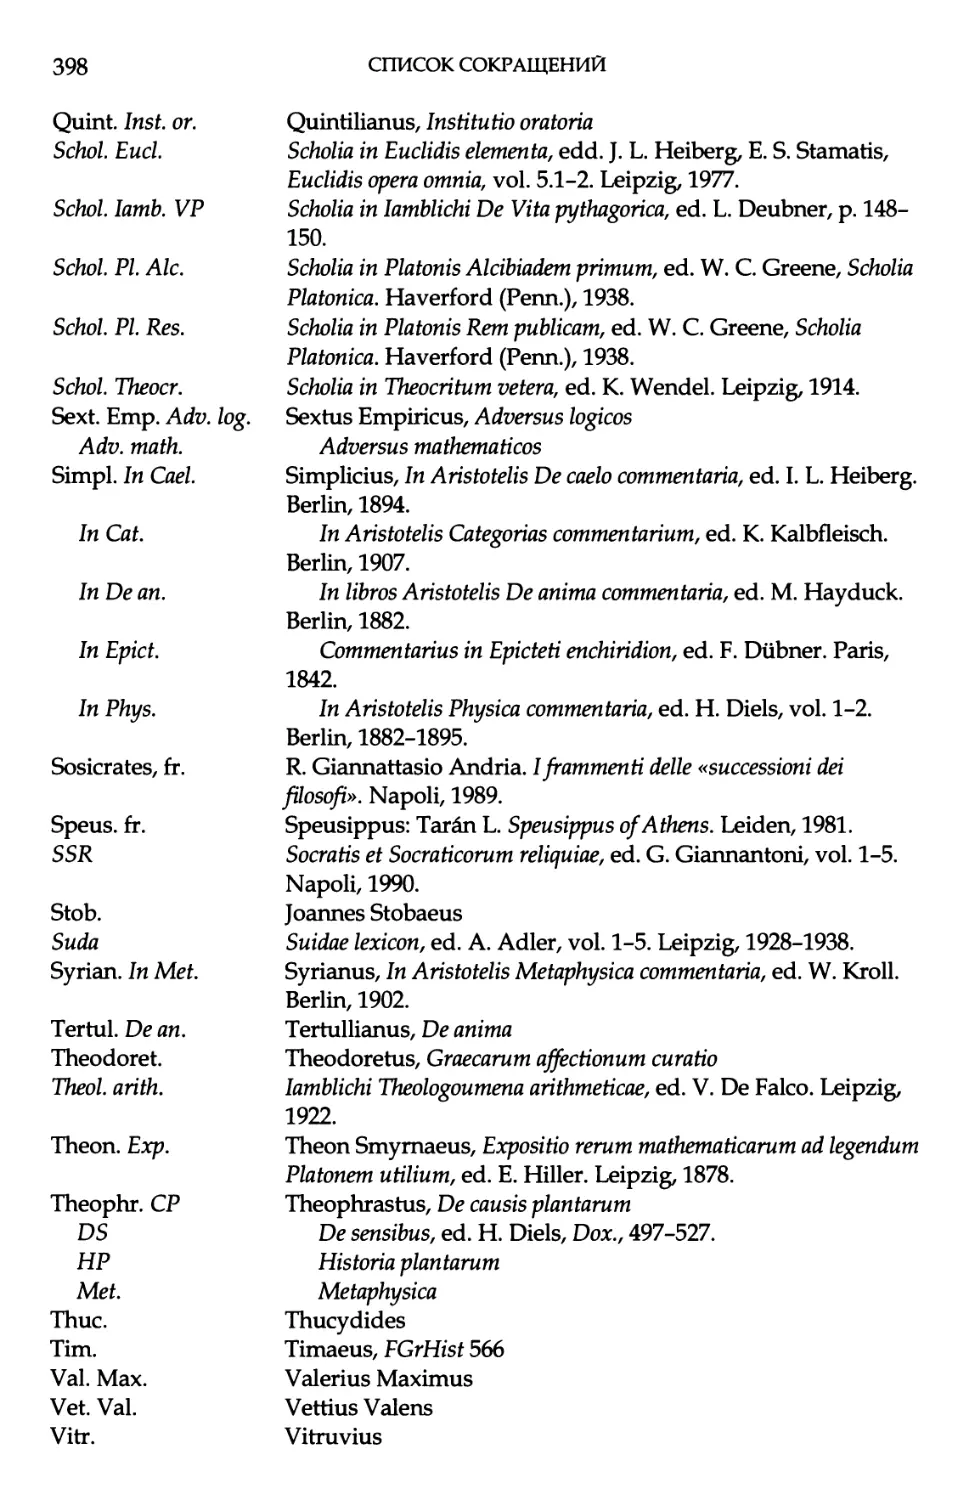 B. Периодические издания и энциклопедии